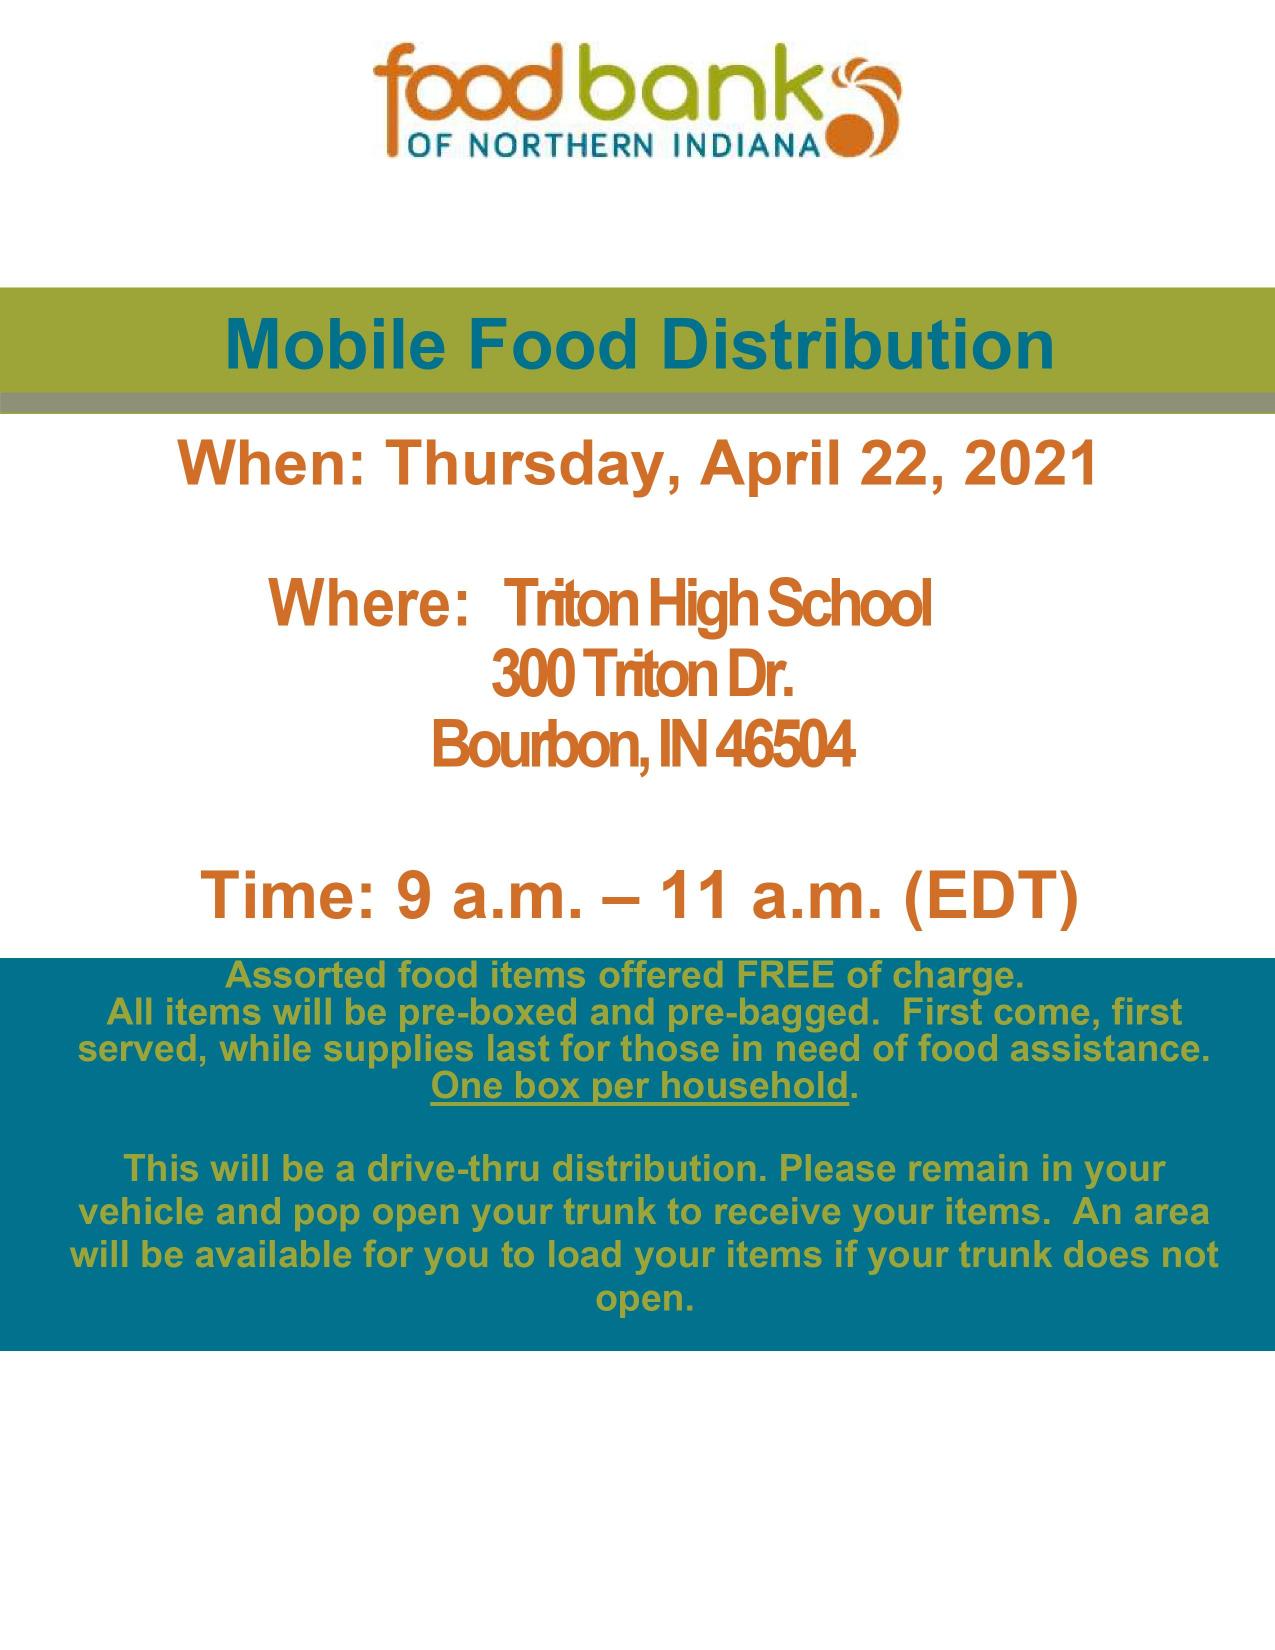 Mobile Food Distribution 4.22